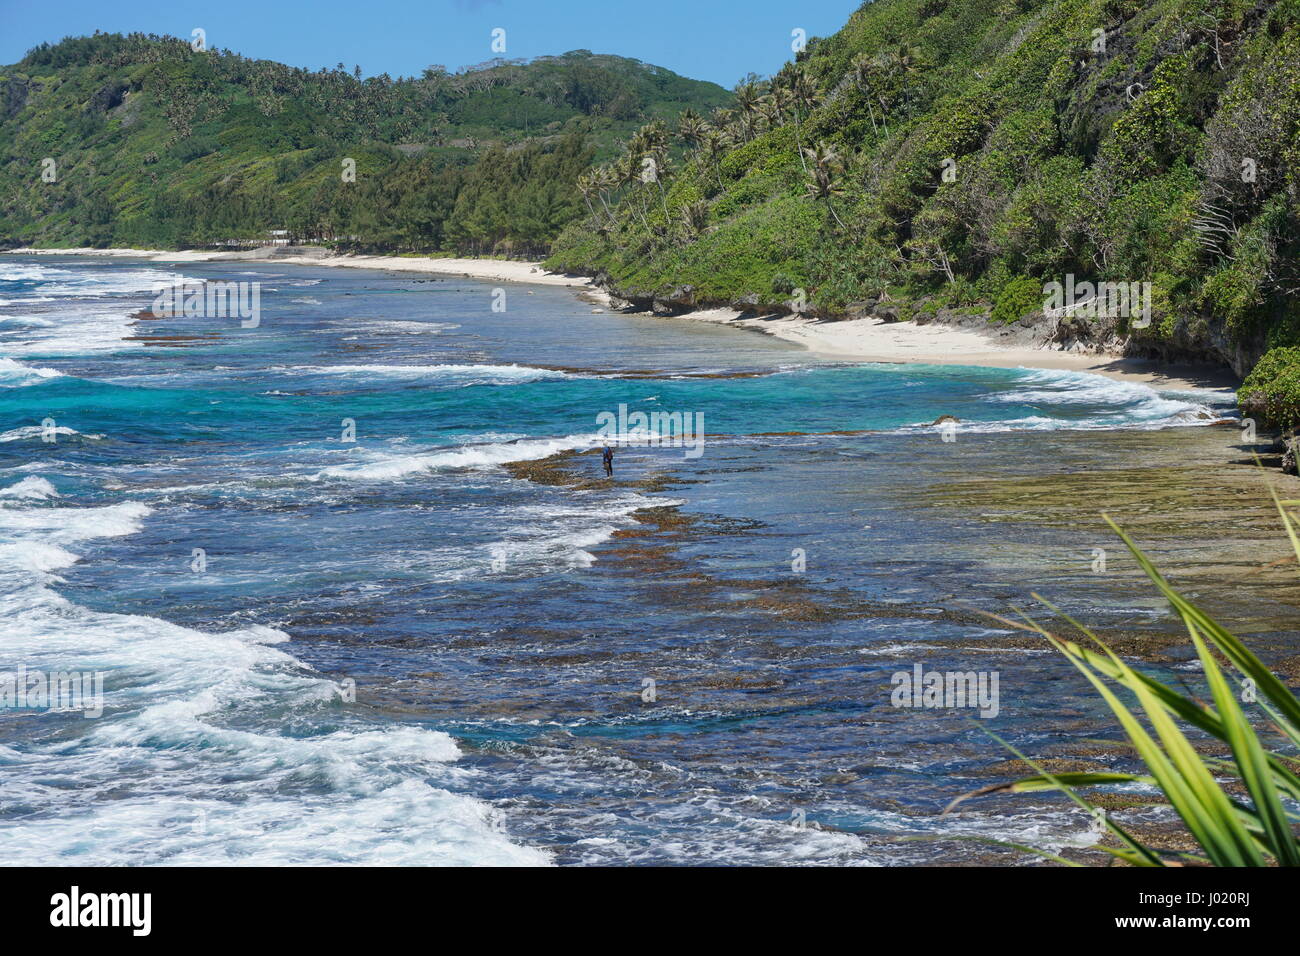 Costa dell'isola di Rurutu con la spiaggia ed il litorale roccioso, Polinesia francese, Austal arcipelago, oceano pacifico del sud Foto Stock